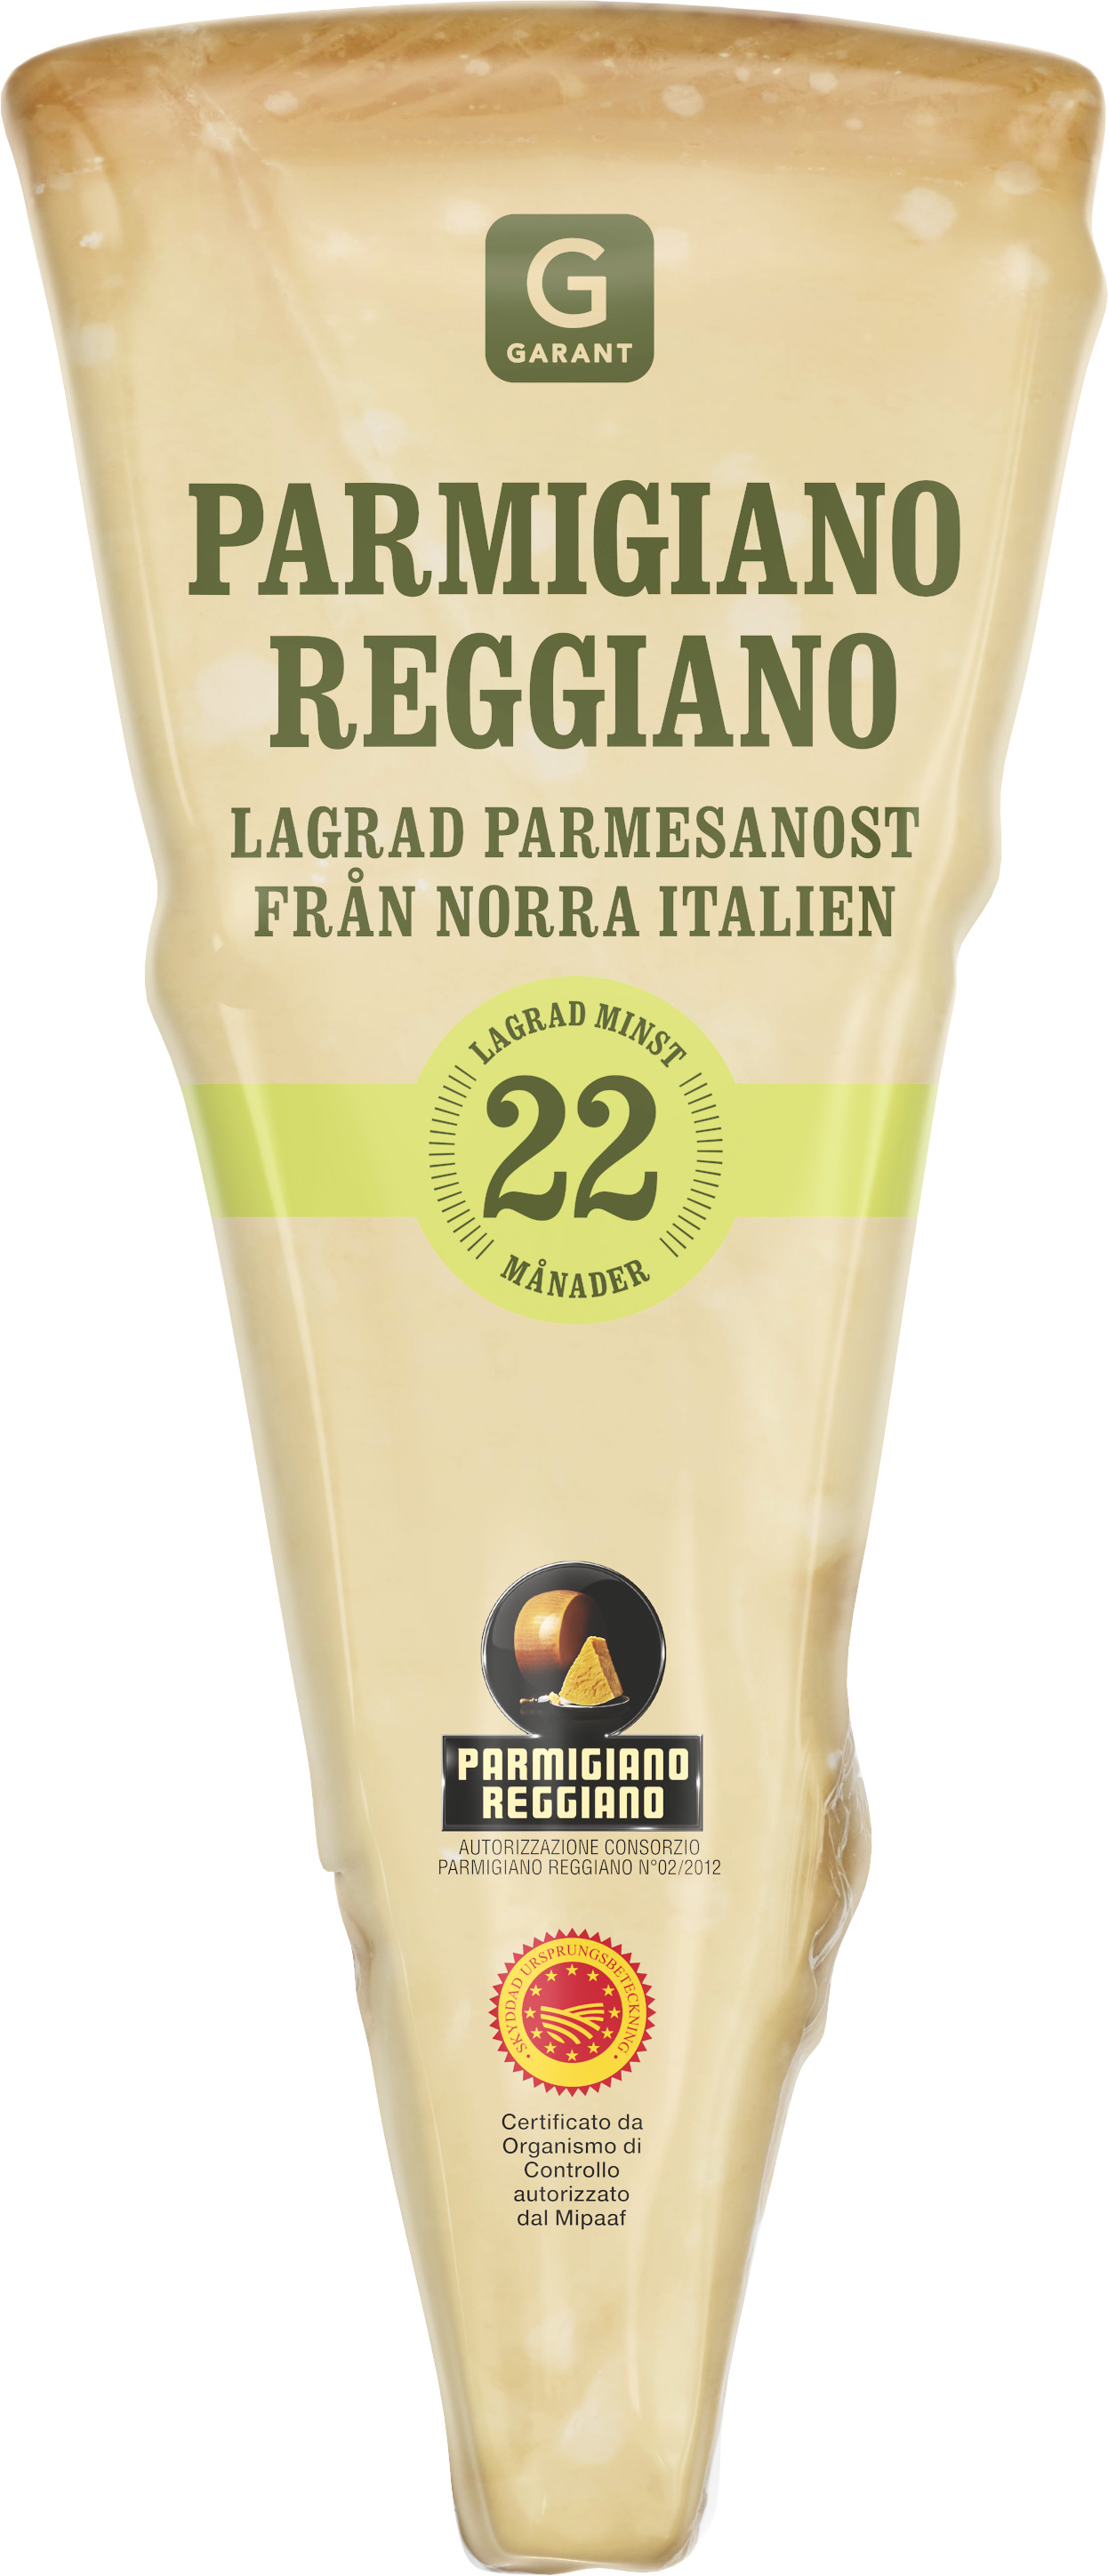 Parmigiano Reggiano - Vad gör den så speciell?